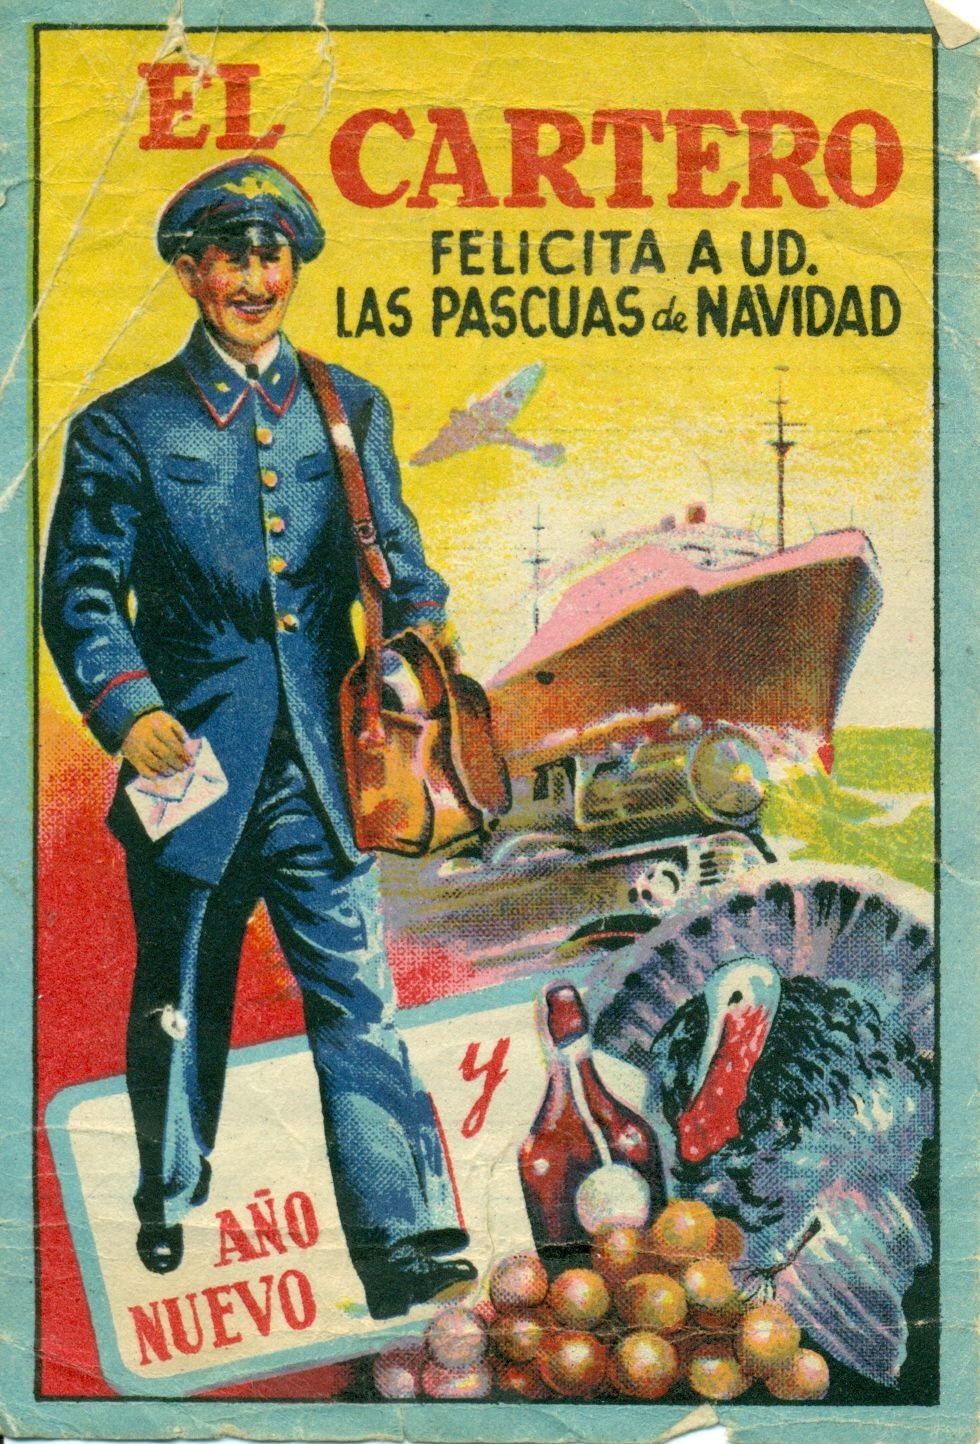 Poster vintage de Navidad cartero felicita las NAvidades